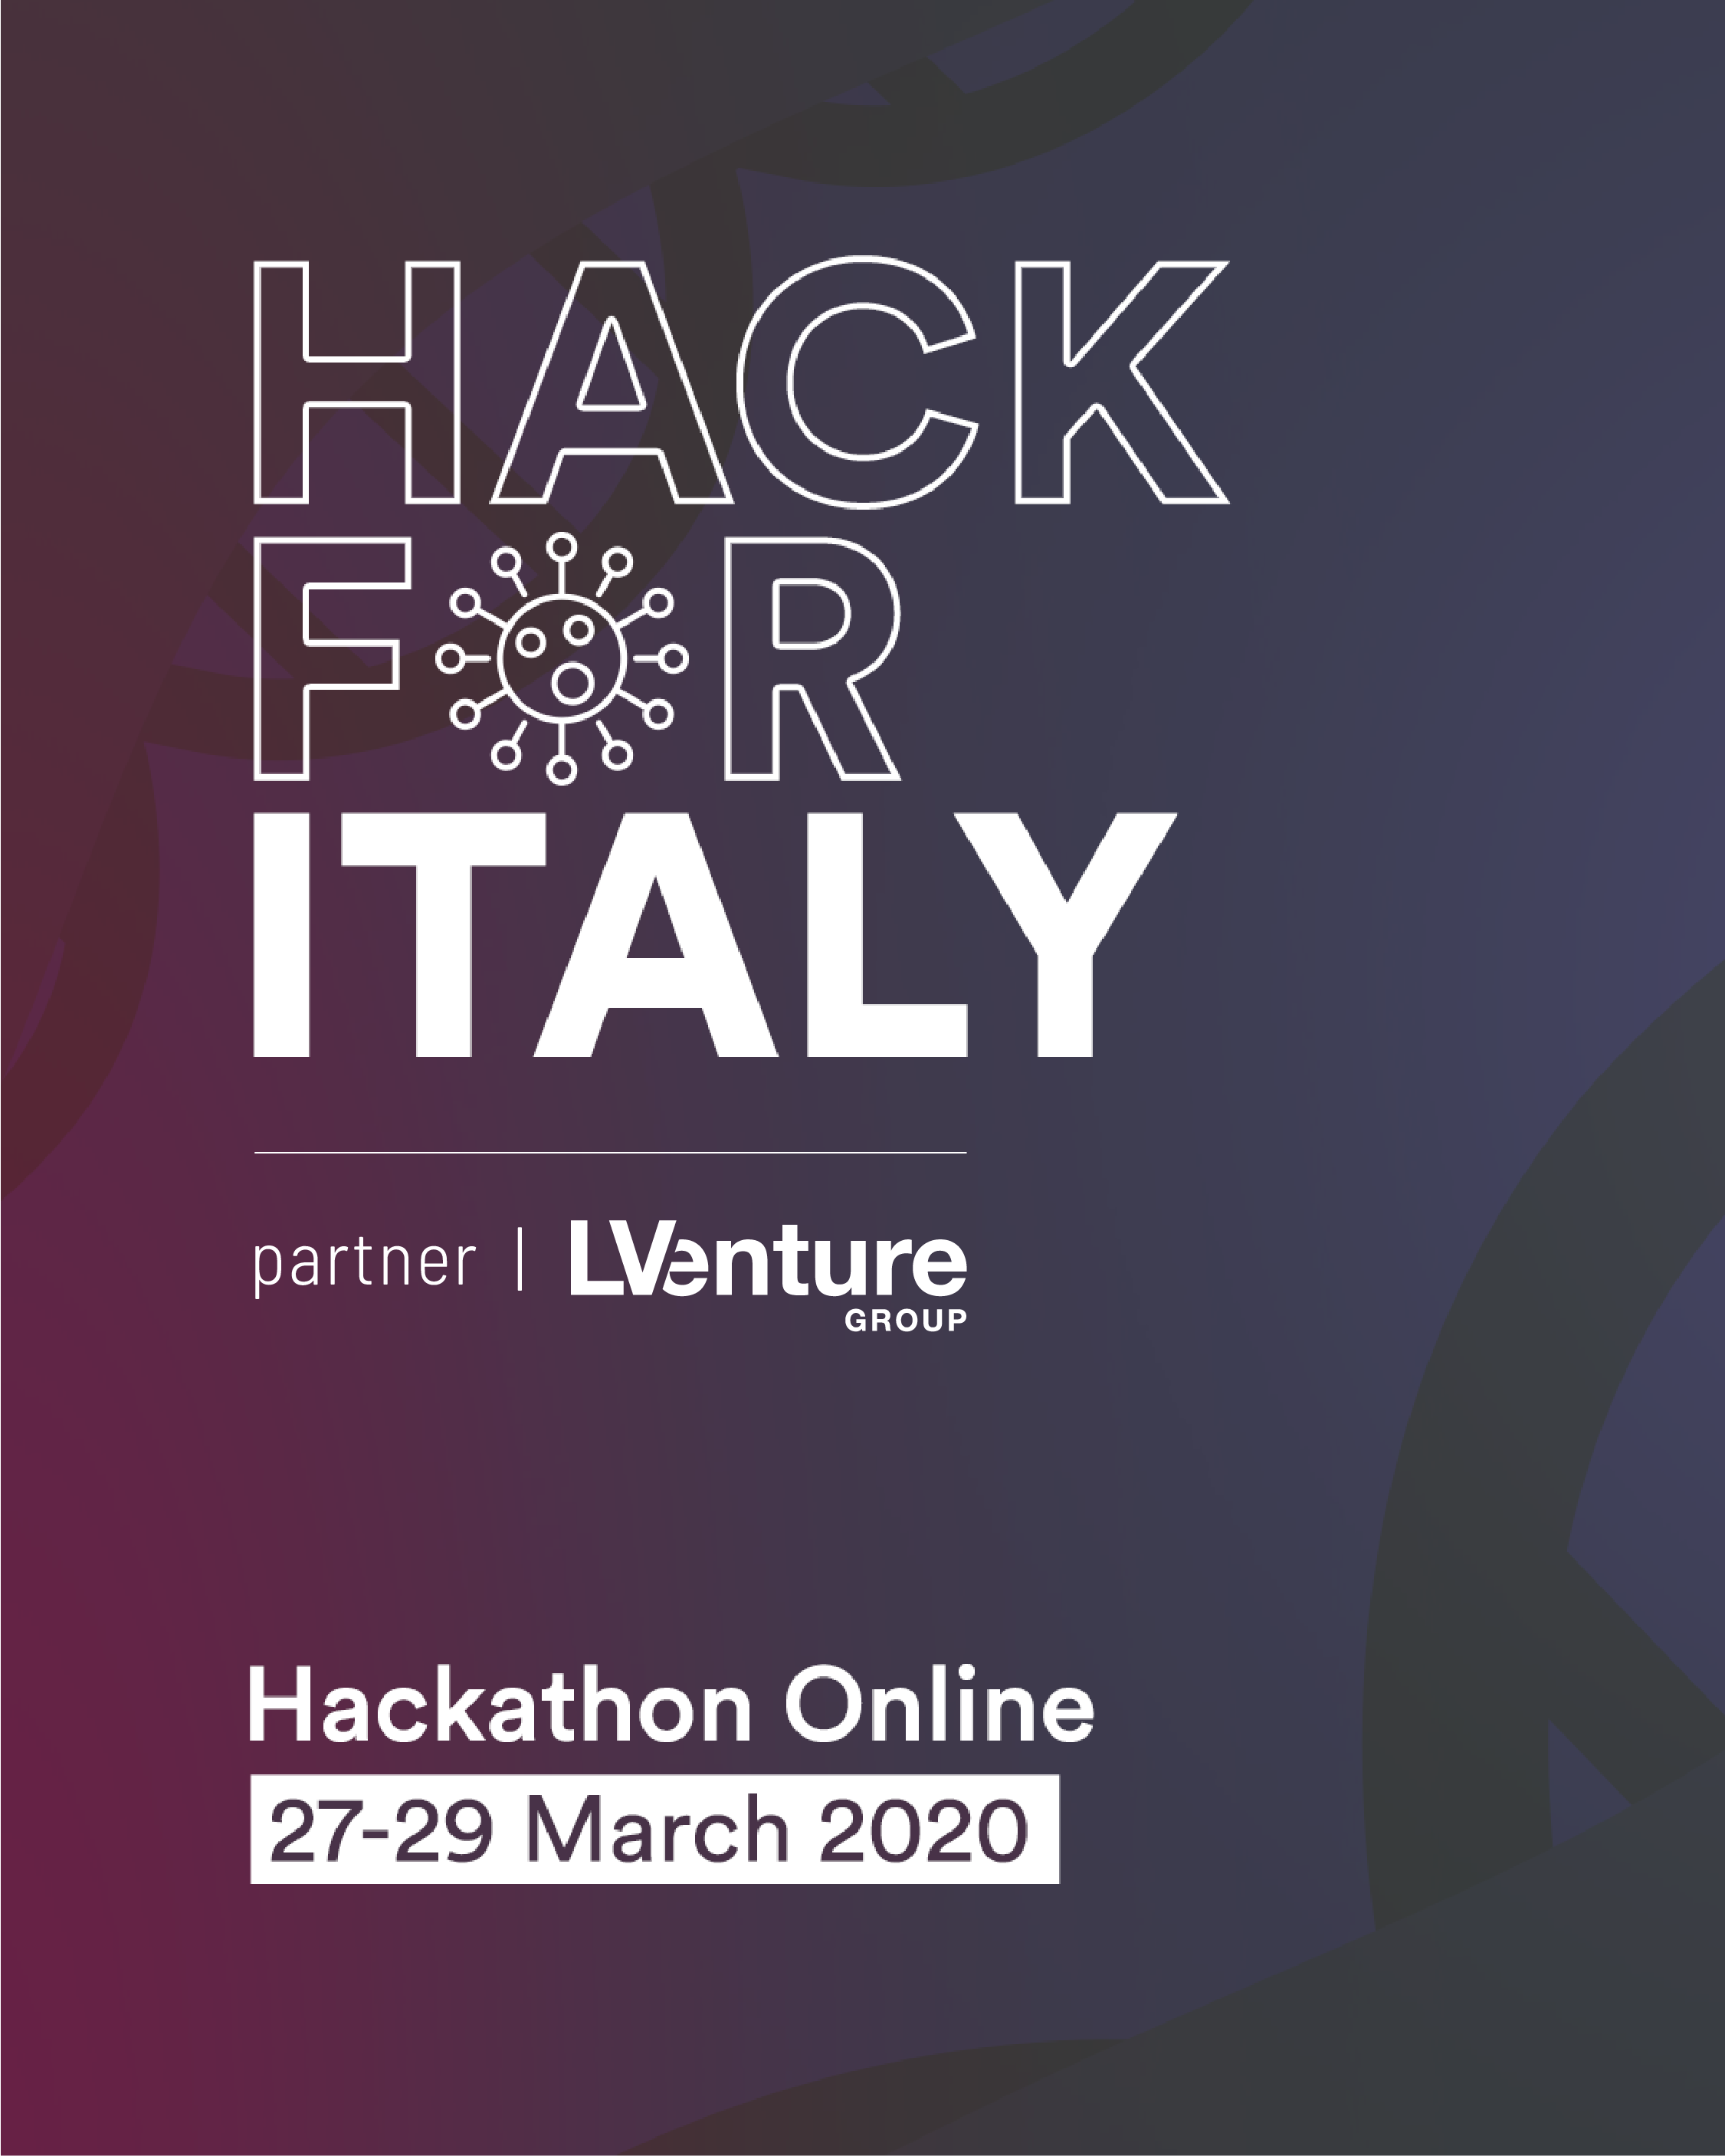 Hack for Italy – Il mondo Tech si unisce per trovare soluzioni innovative a supporto della battaglia contro il COVID-19. 